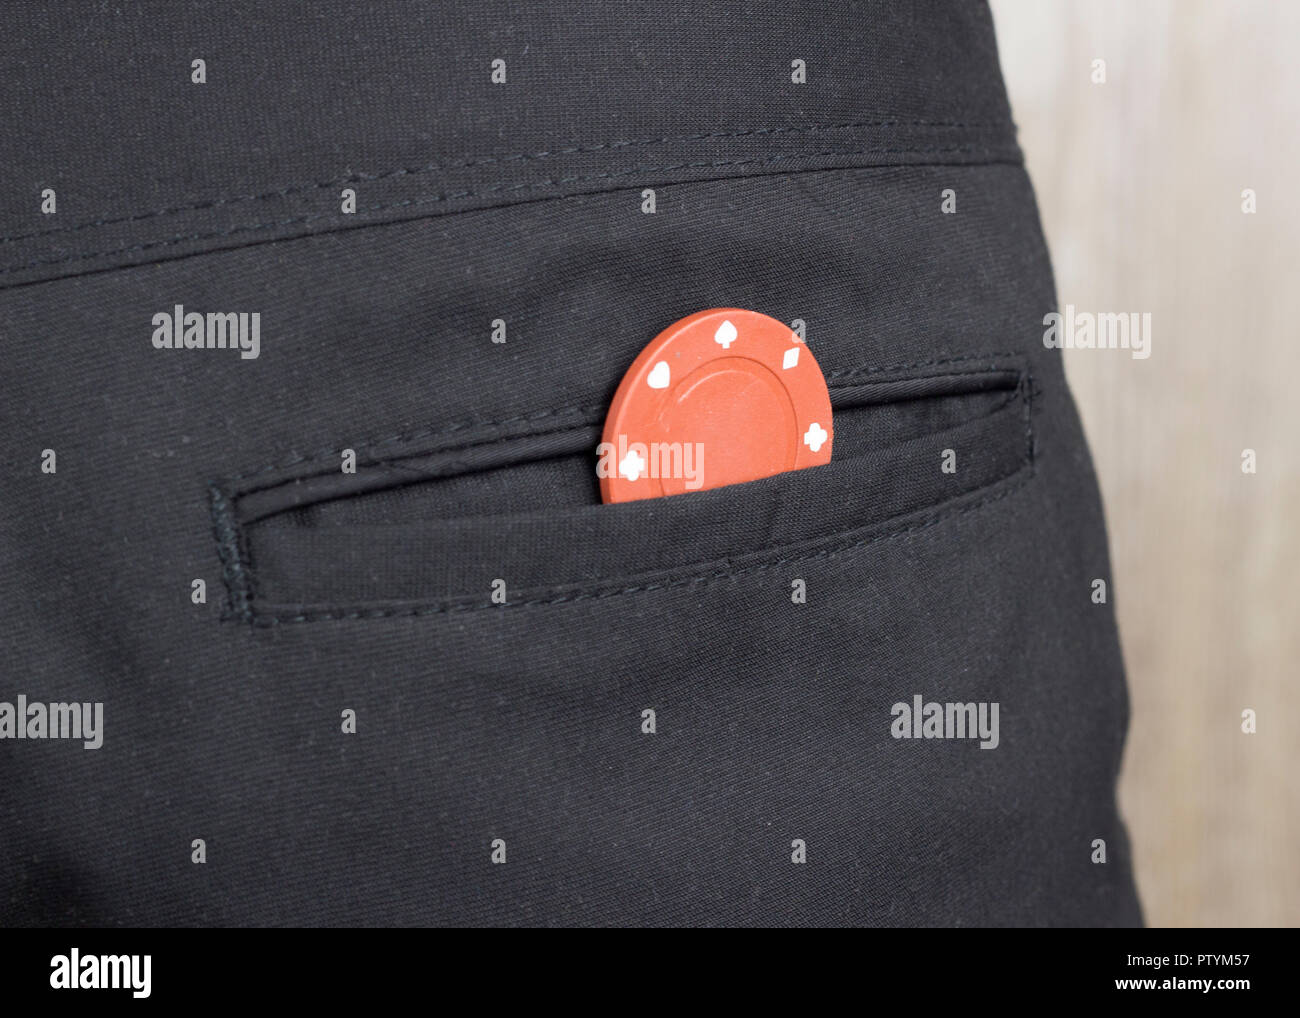 Un chip da casinò nella tasca posteriore dei pantaloni, close-up Foto Stock